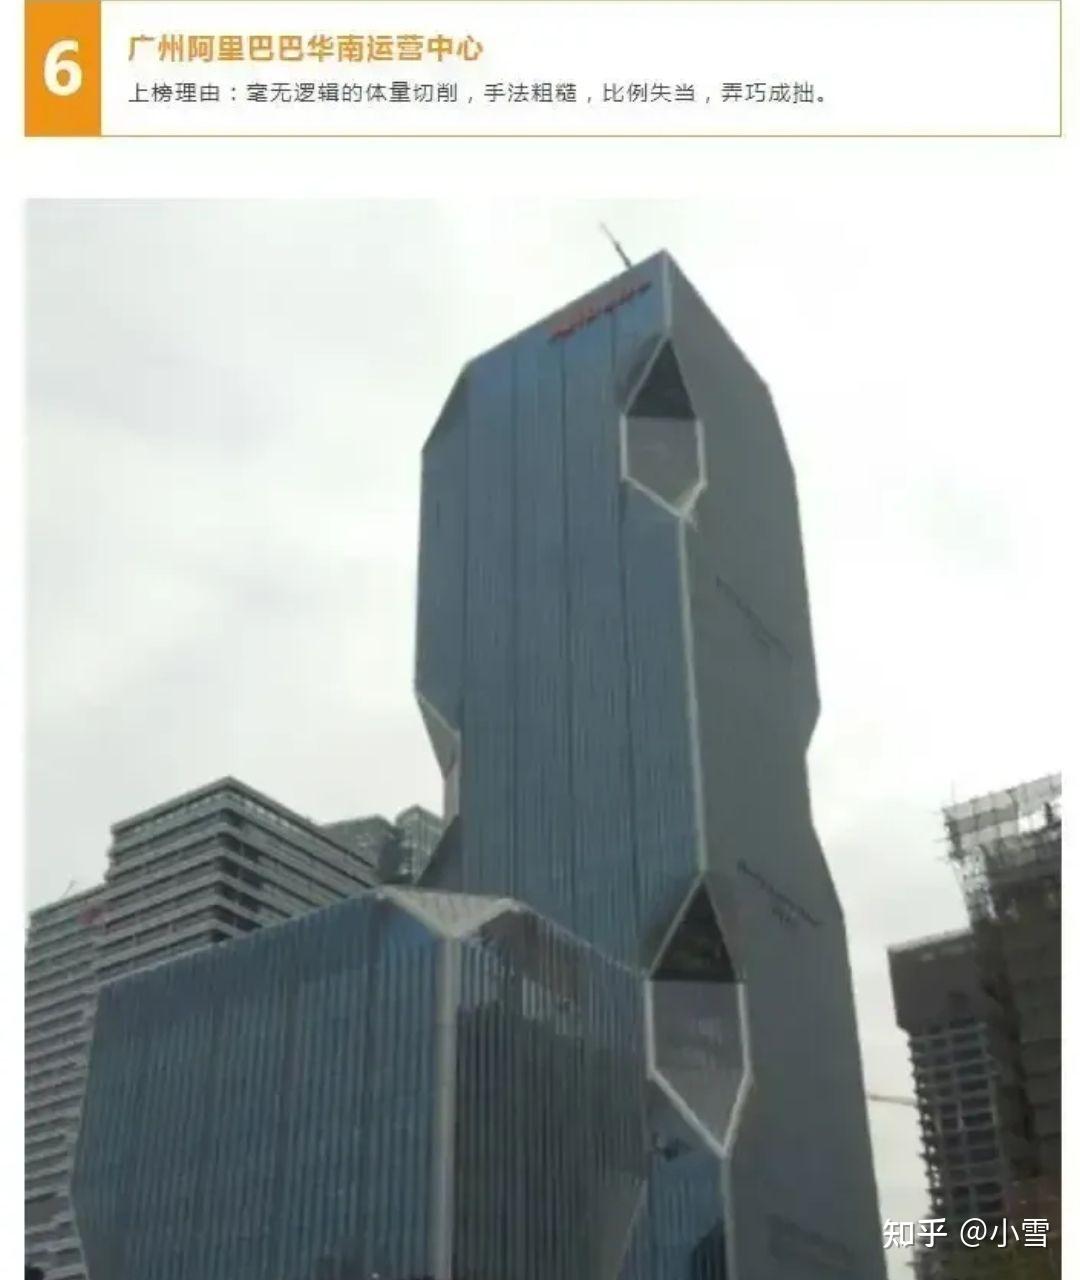 一个最丑建筑大奖这次是位于琶洲互联网总部区的阿里巴巴华南运营中心